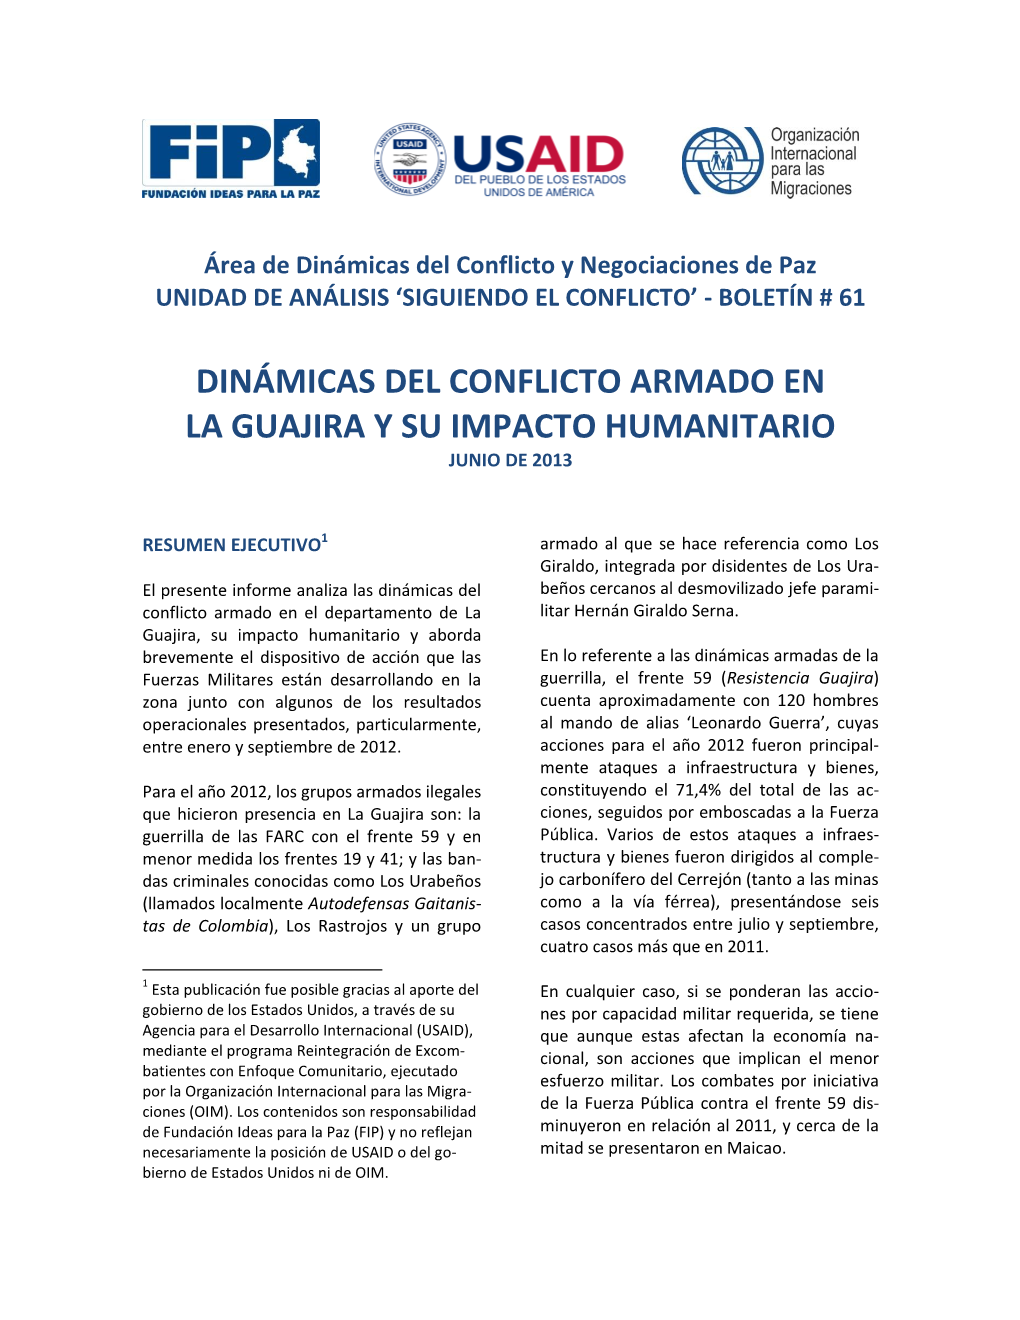 Dinámicas Del Conflicto Armado En La Guajira Y Su Impacto Humanitario Junio De 2013